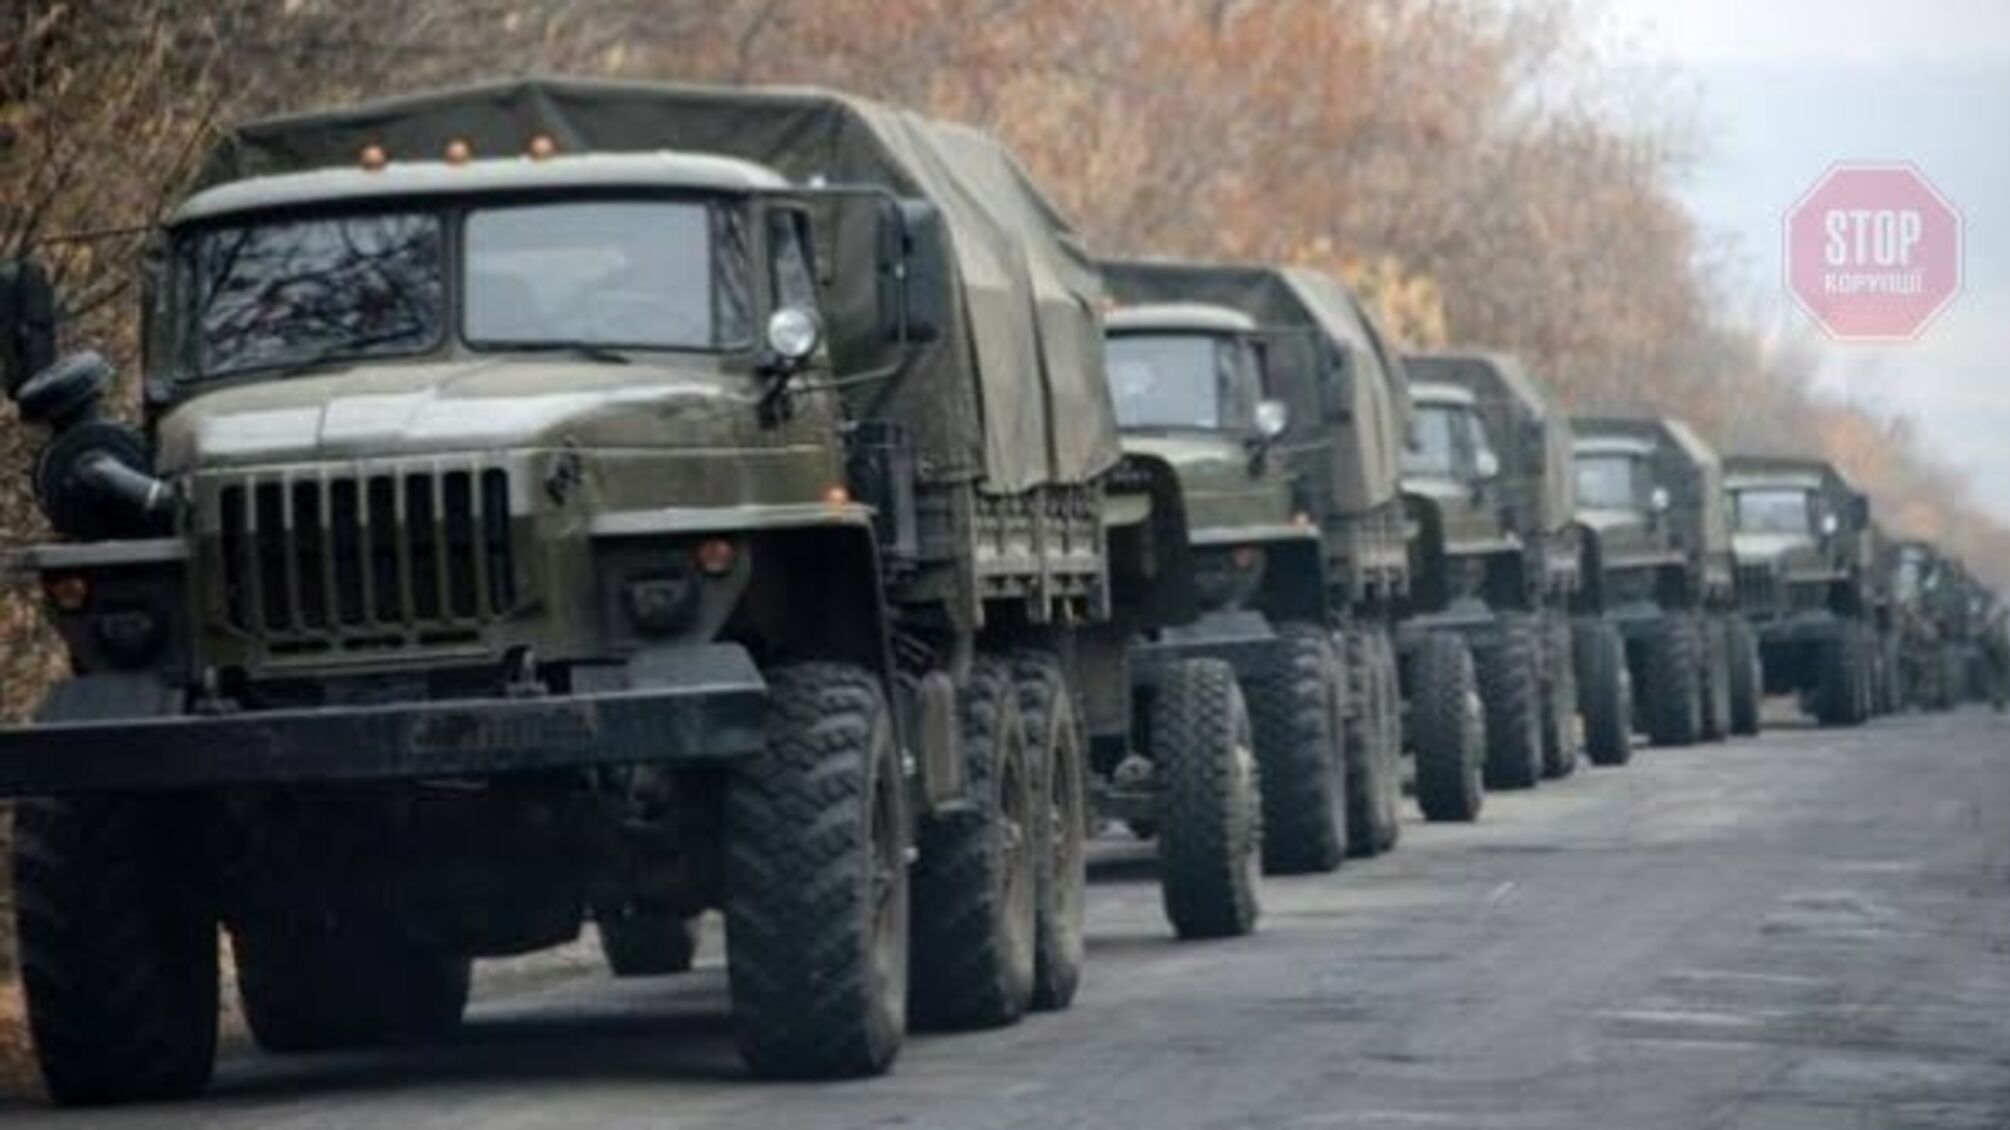 Підсилює позиції: Росія нарощує запаси зброї та боєприпасів на Донбасі